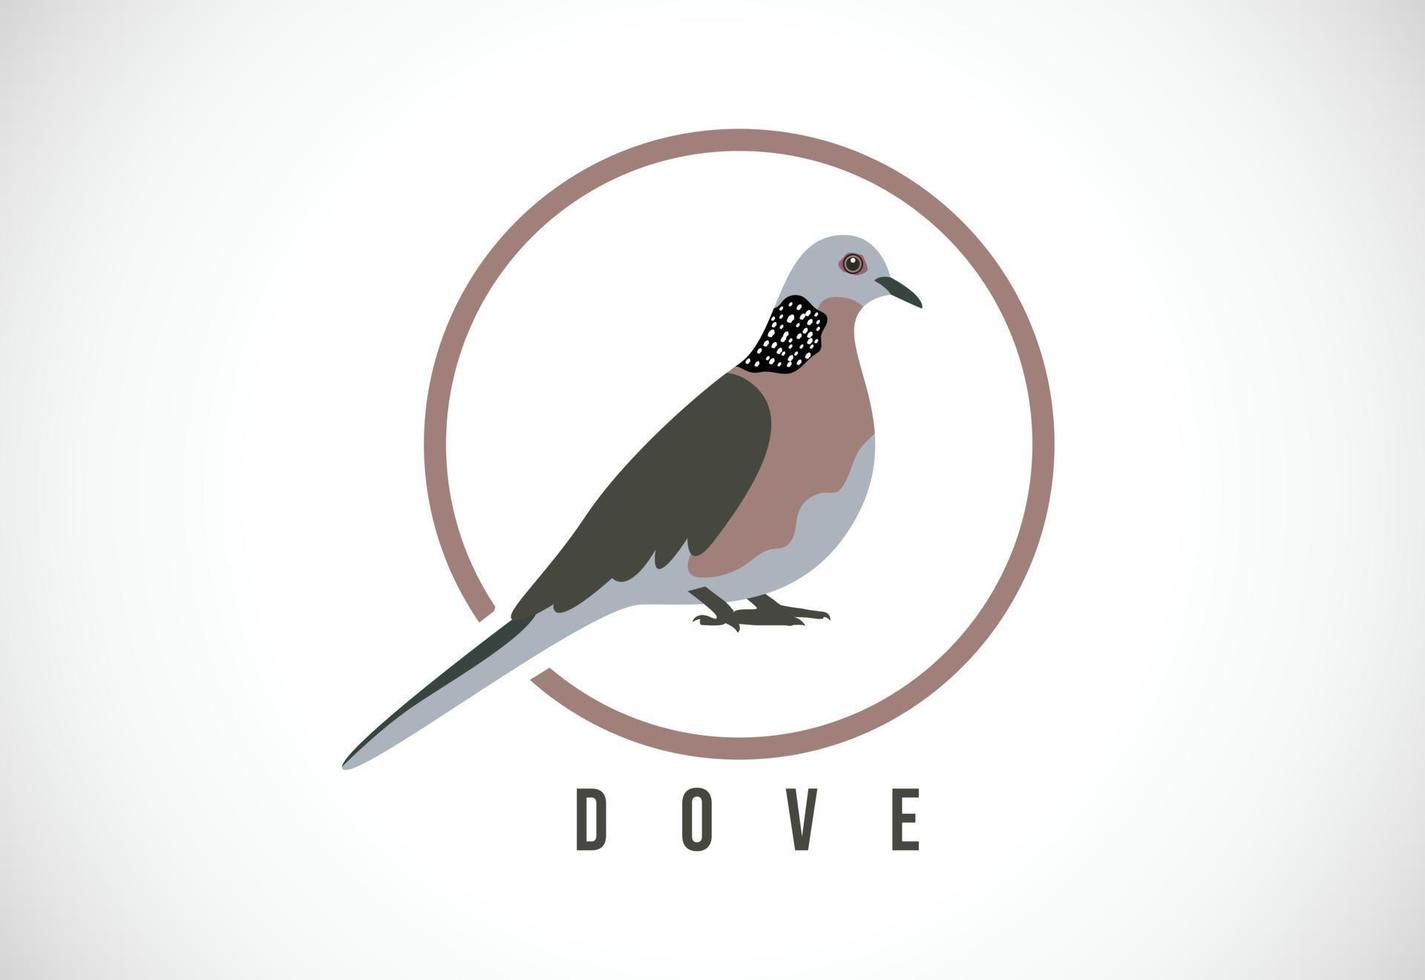 Dove bird in a circle. Dove bird logo design template vector illustration